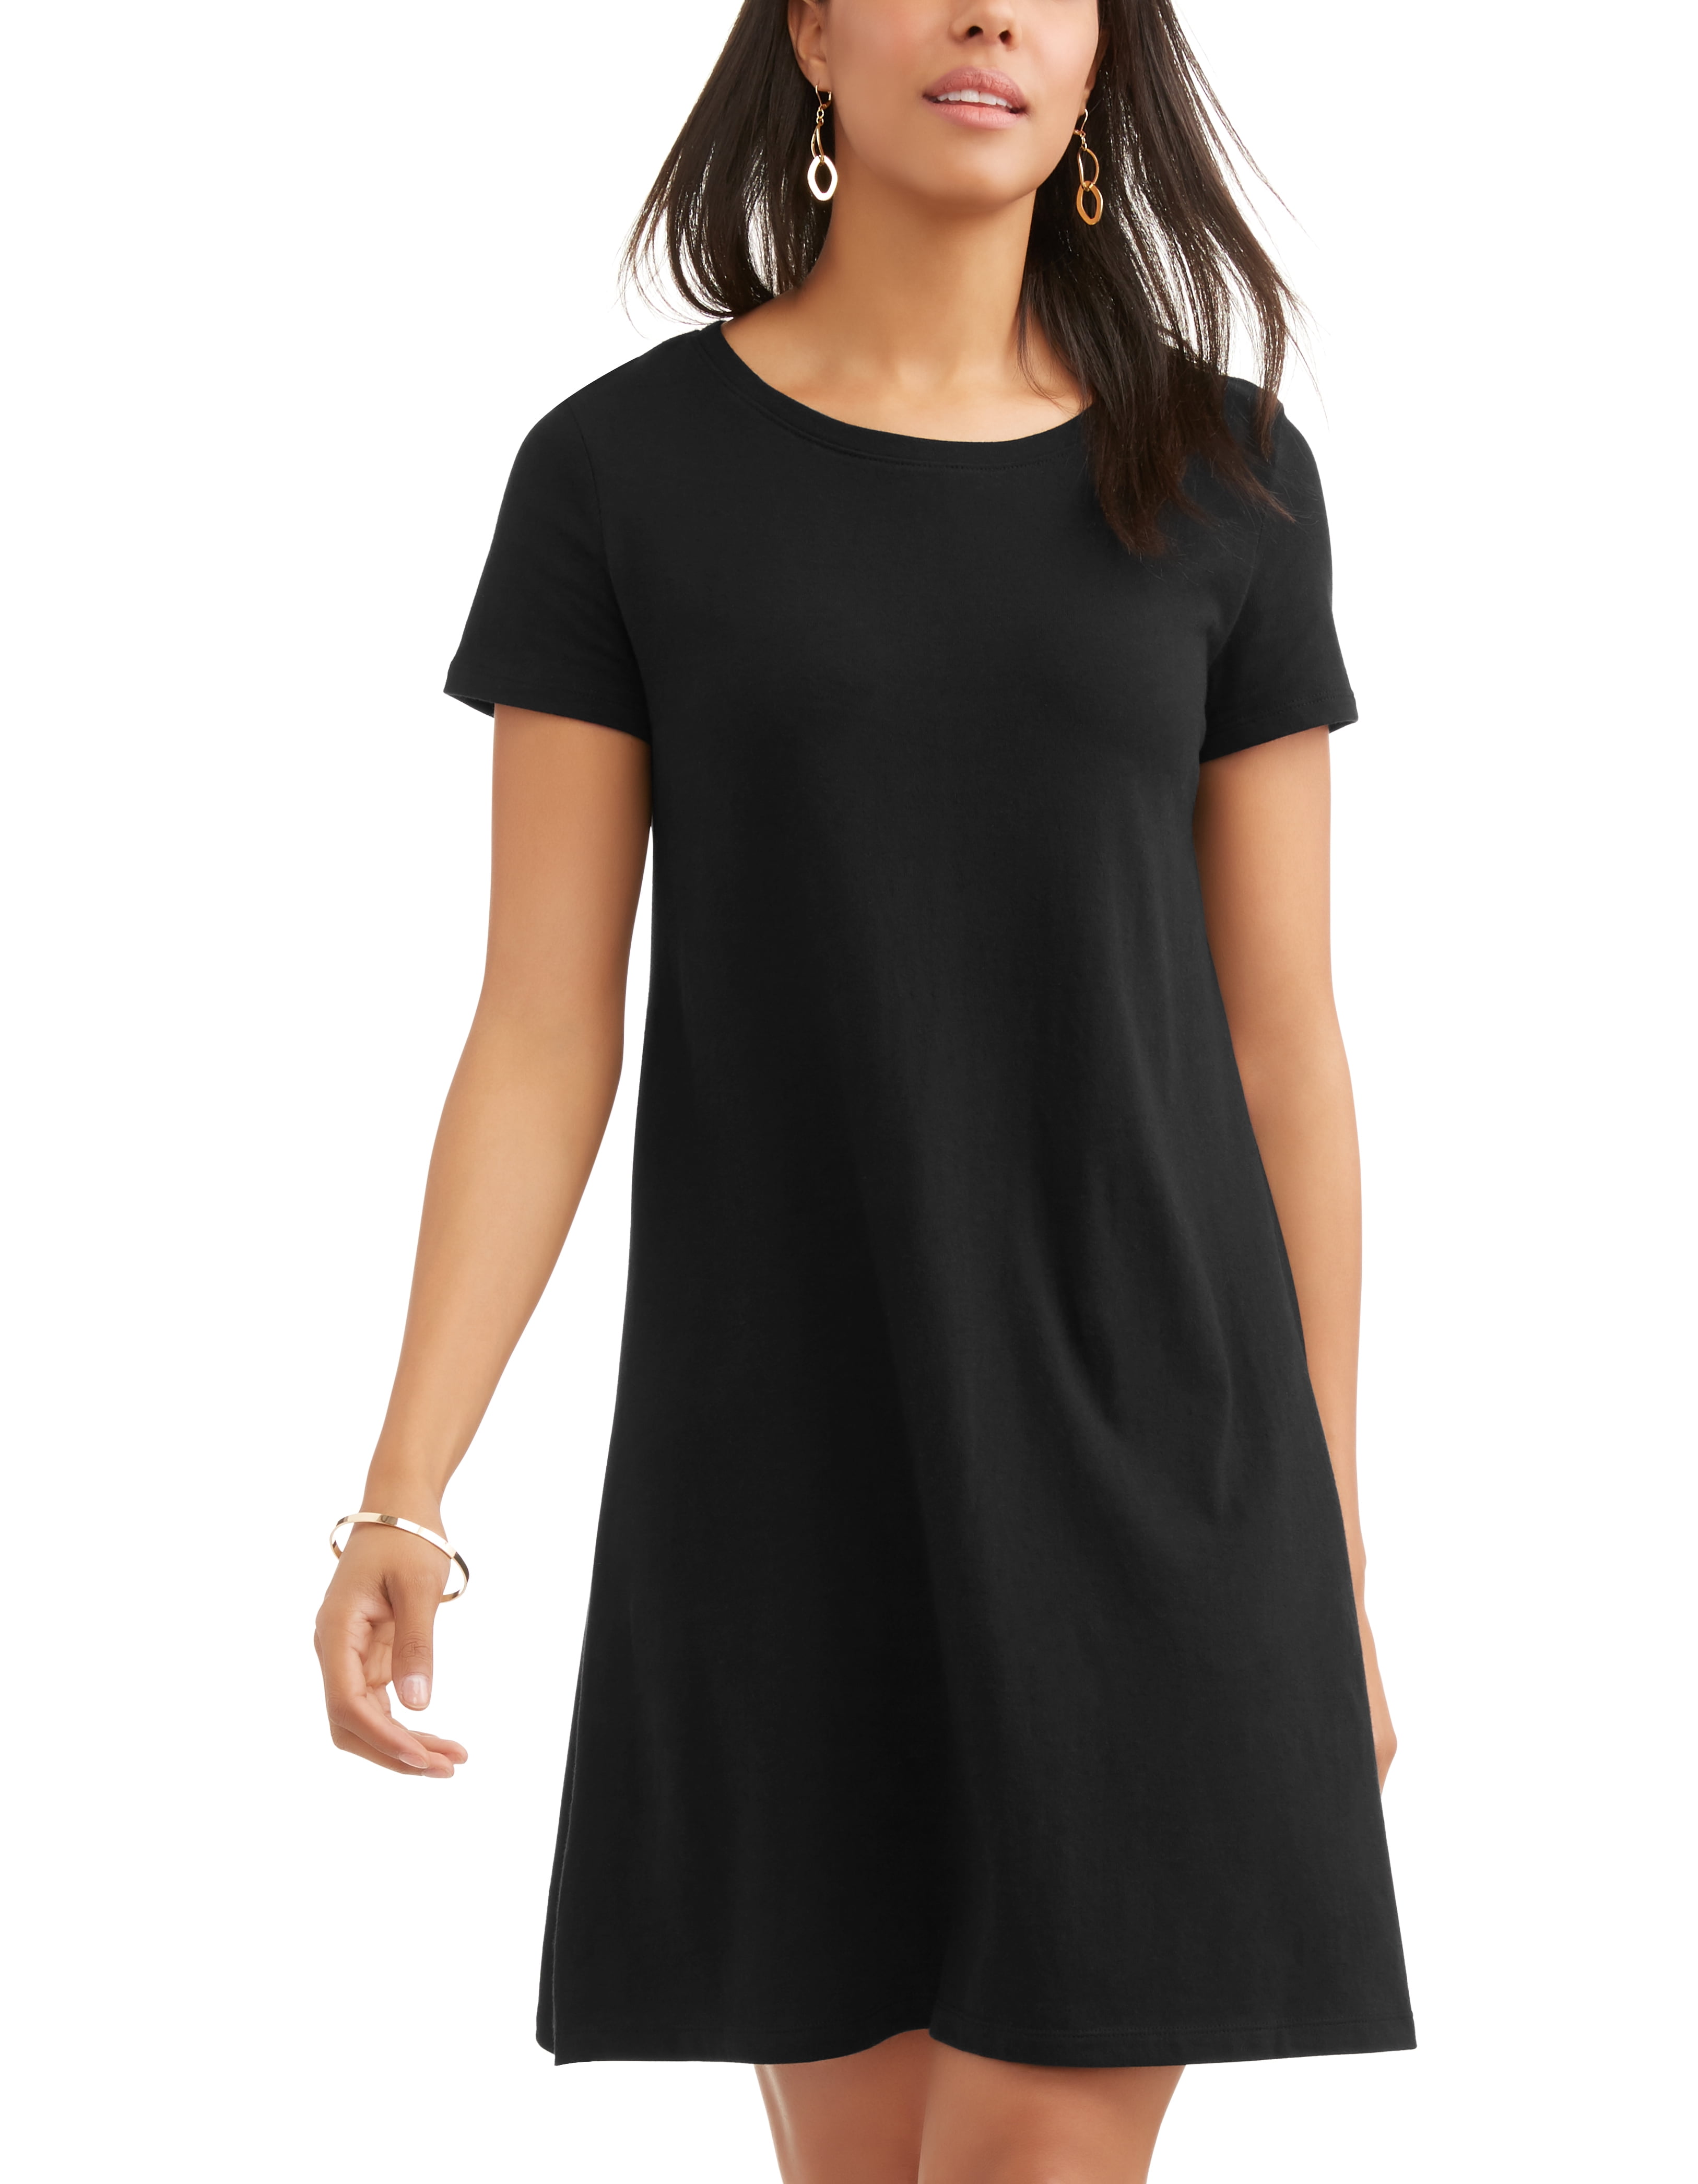 Tru Women's Essential T-shirt Dress ...